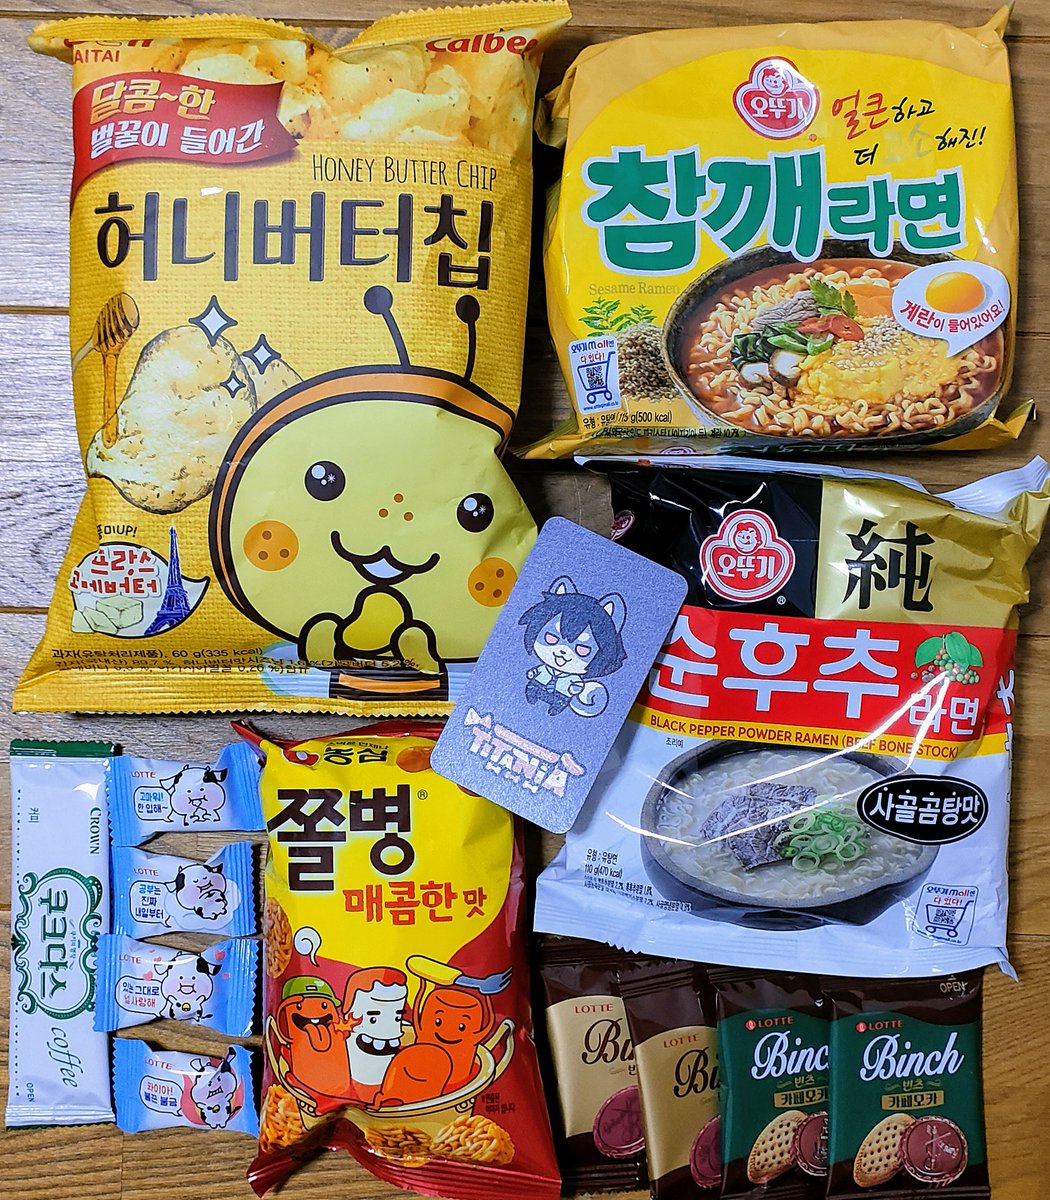 TITANIAさん(@warningblackdog)から抱き枕カバーが届きました!!美麗!!韓国のお菓子&麺まで入れていただきありがとうございます〜🍬大切にします! 